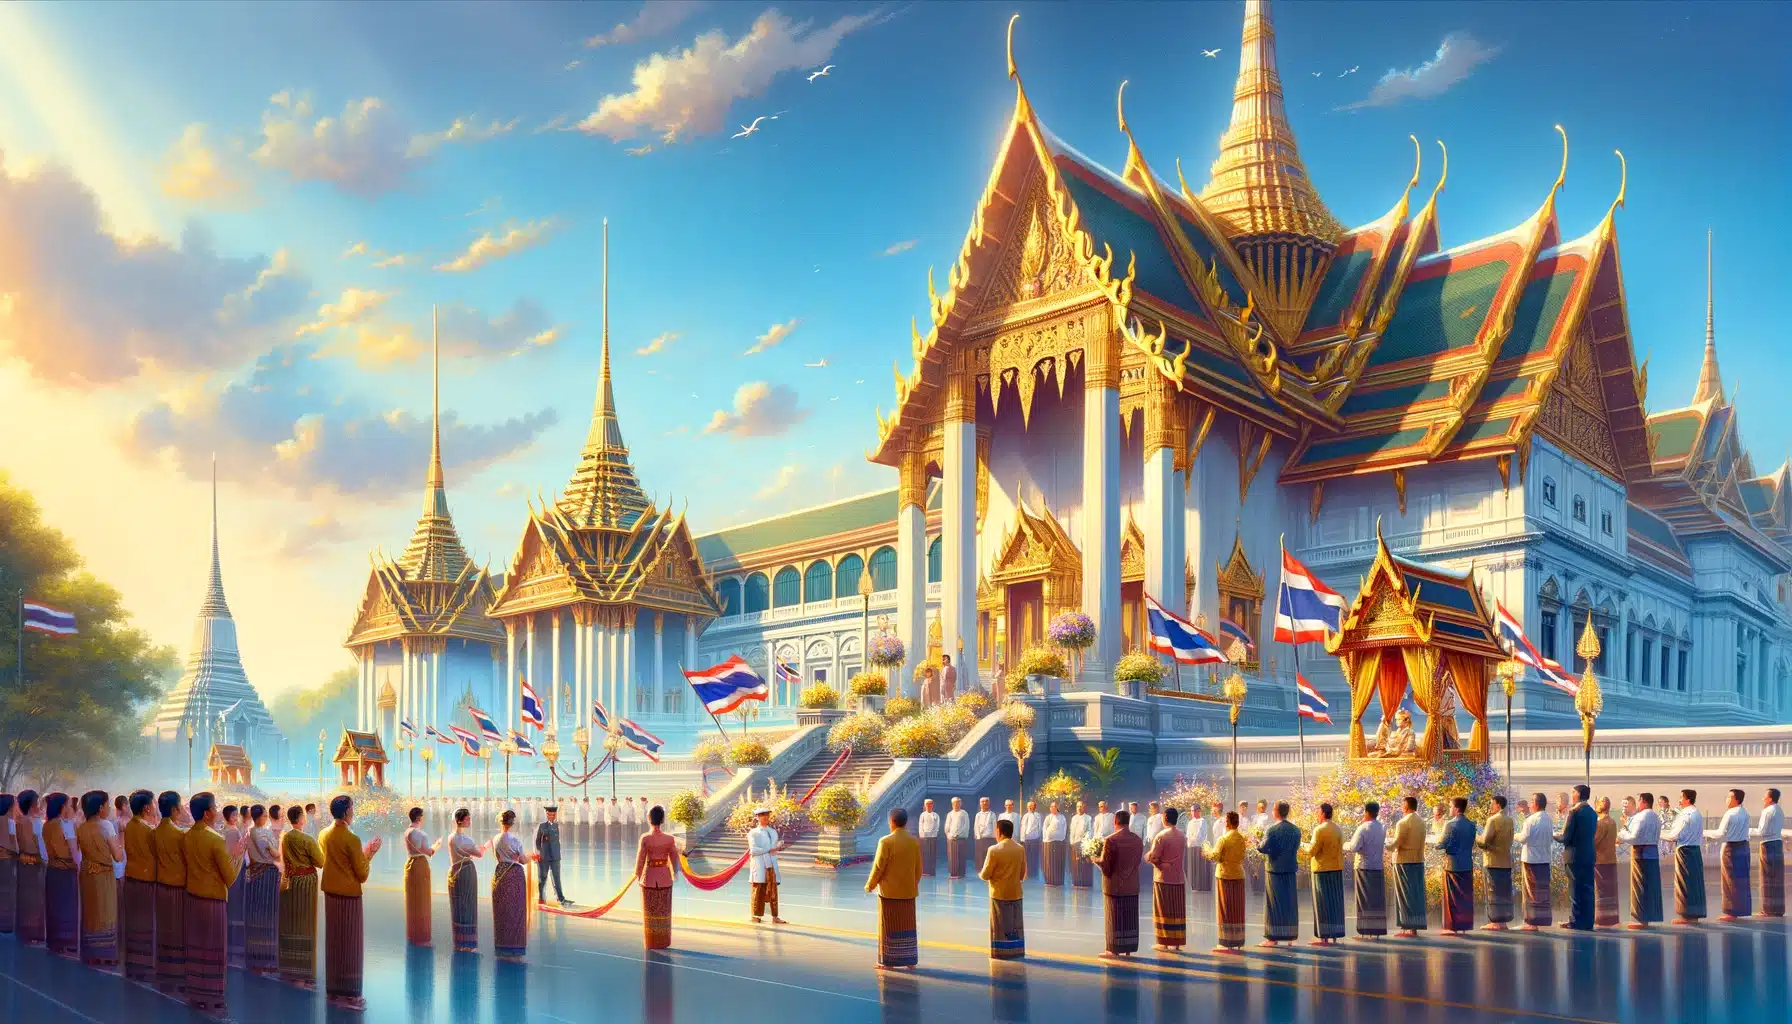 ภาพวาดเกี่ยวกับวันฉัตรมงคลในประเทศไทย มีพระบรมมหาราชวังในกรุงเทพมหานครประดับด้วยเครื่องประดับทองและธงชาติไทย ภายใต้ท้องฟ้าสีฟ้าสดใส ผู้คนในชุดไทยดั้งเดิมกำลังแสดงความเคารพและเฉลิมฉลองอย่างสง่างาม ภาพนี้แสดงถึงความยิ่งใหญ่และวัฒนธรรมดั้งเดิมของไทย